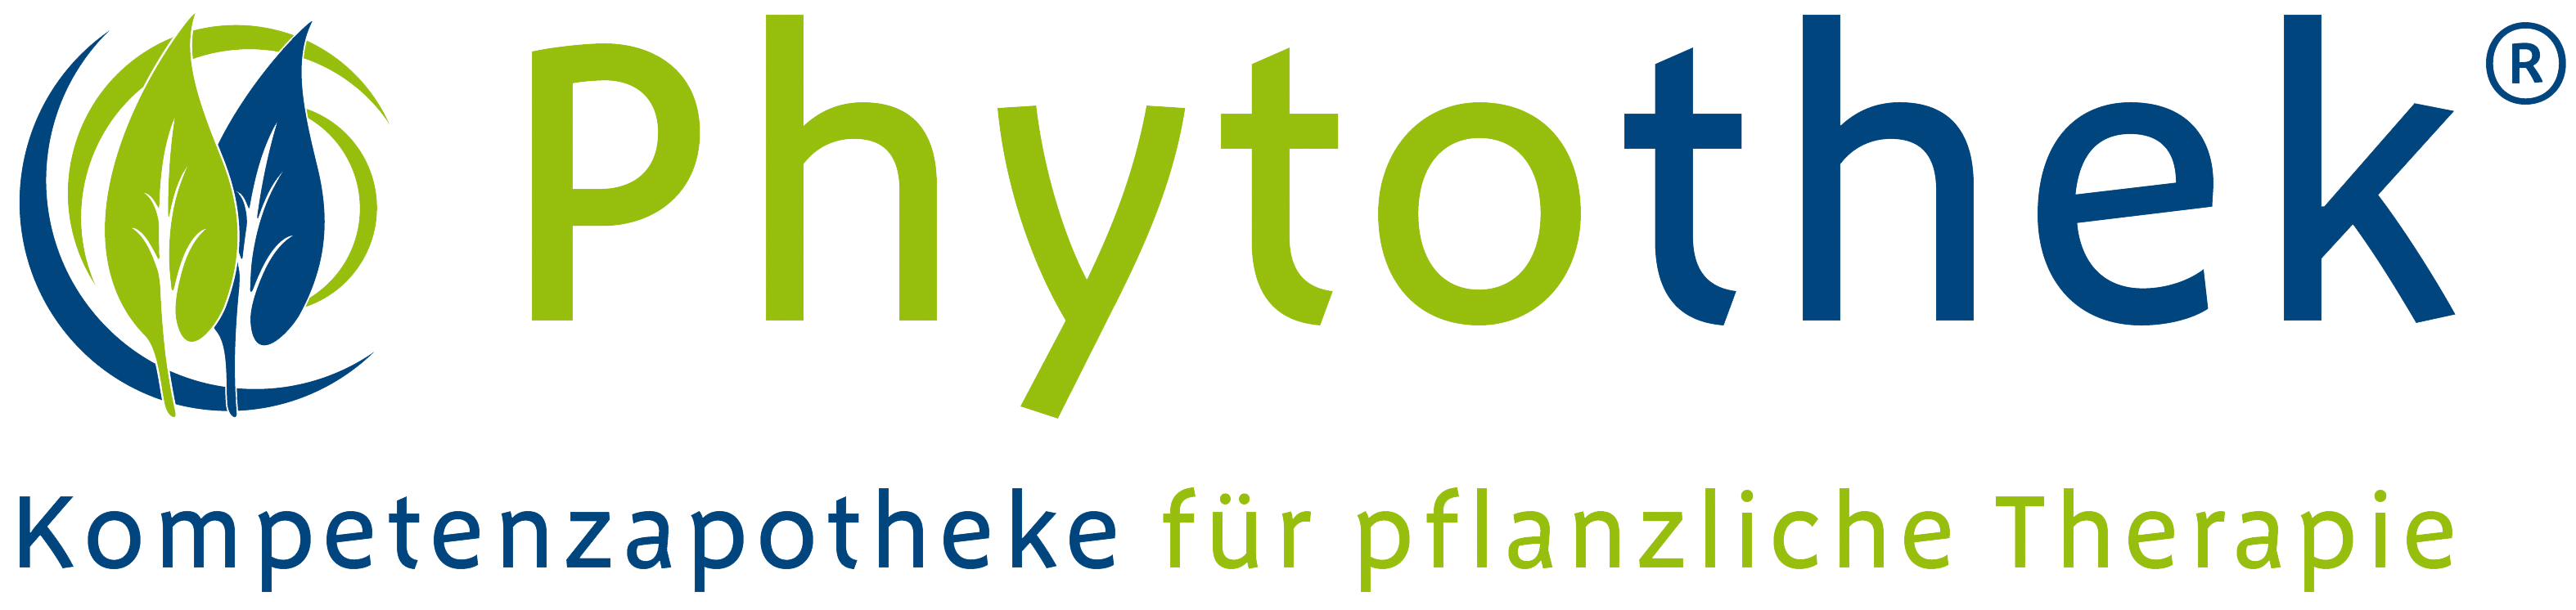 Phytothek-Logo